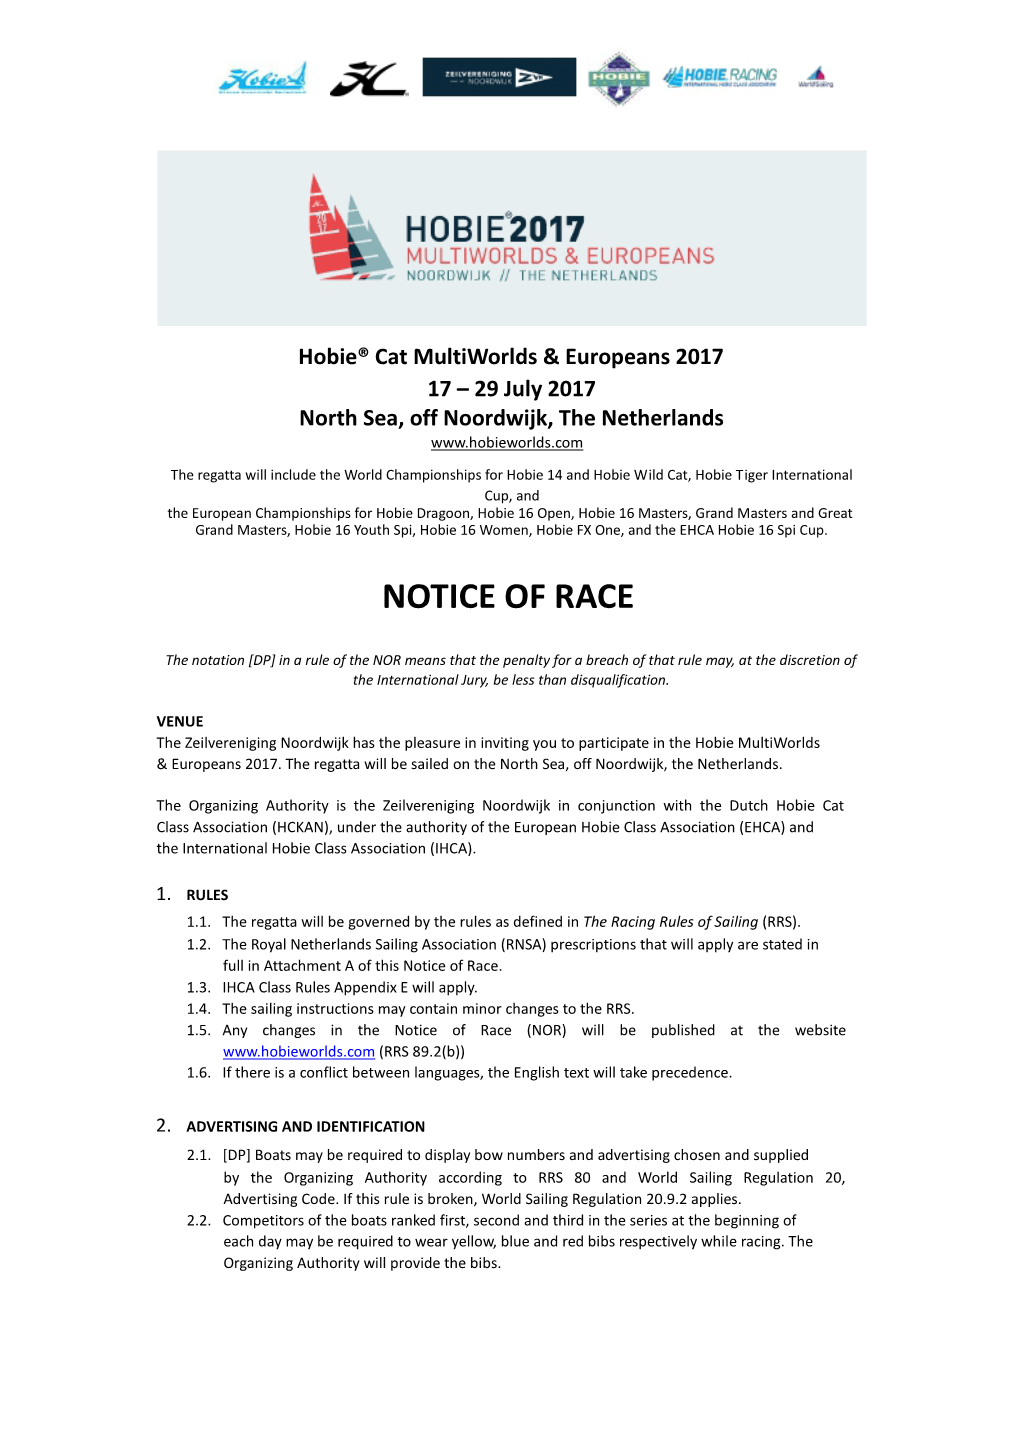 Notice of Race